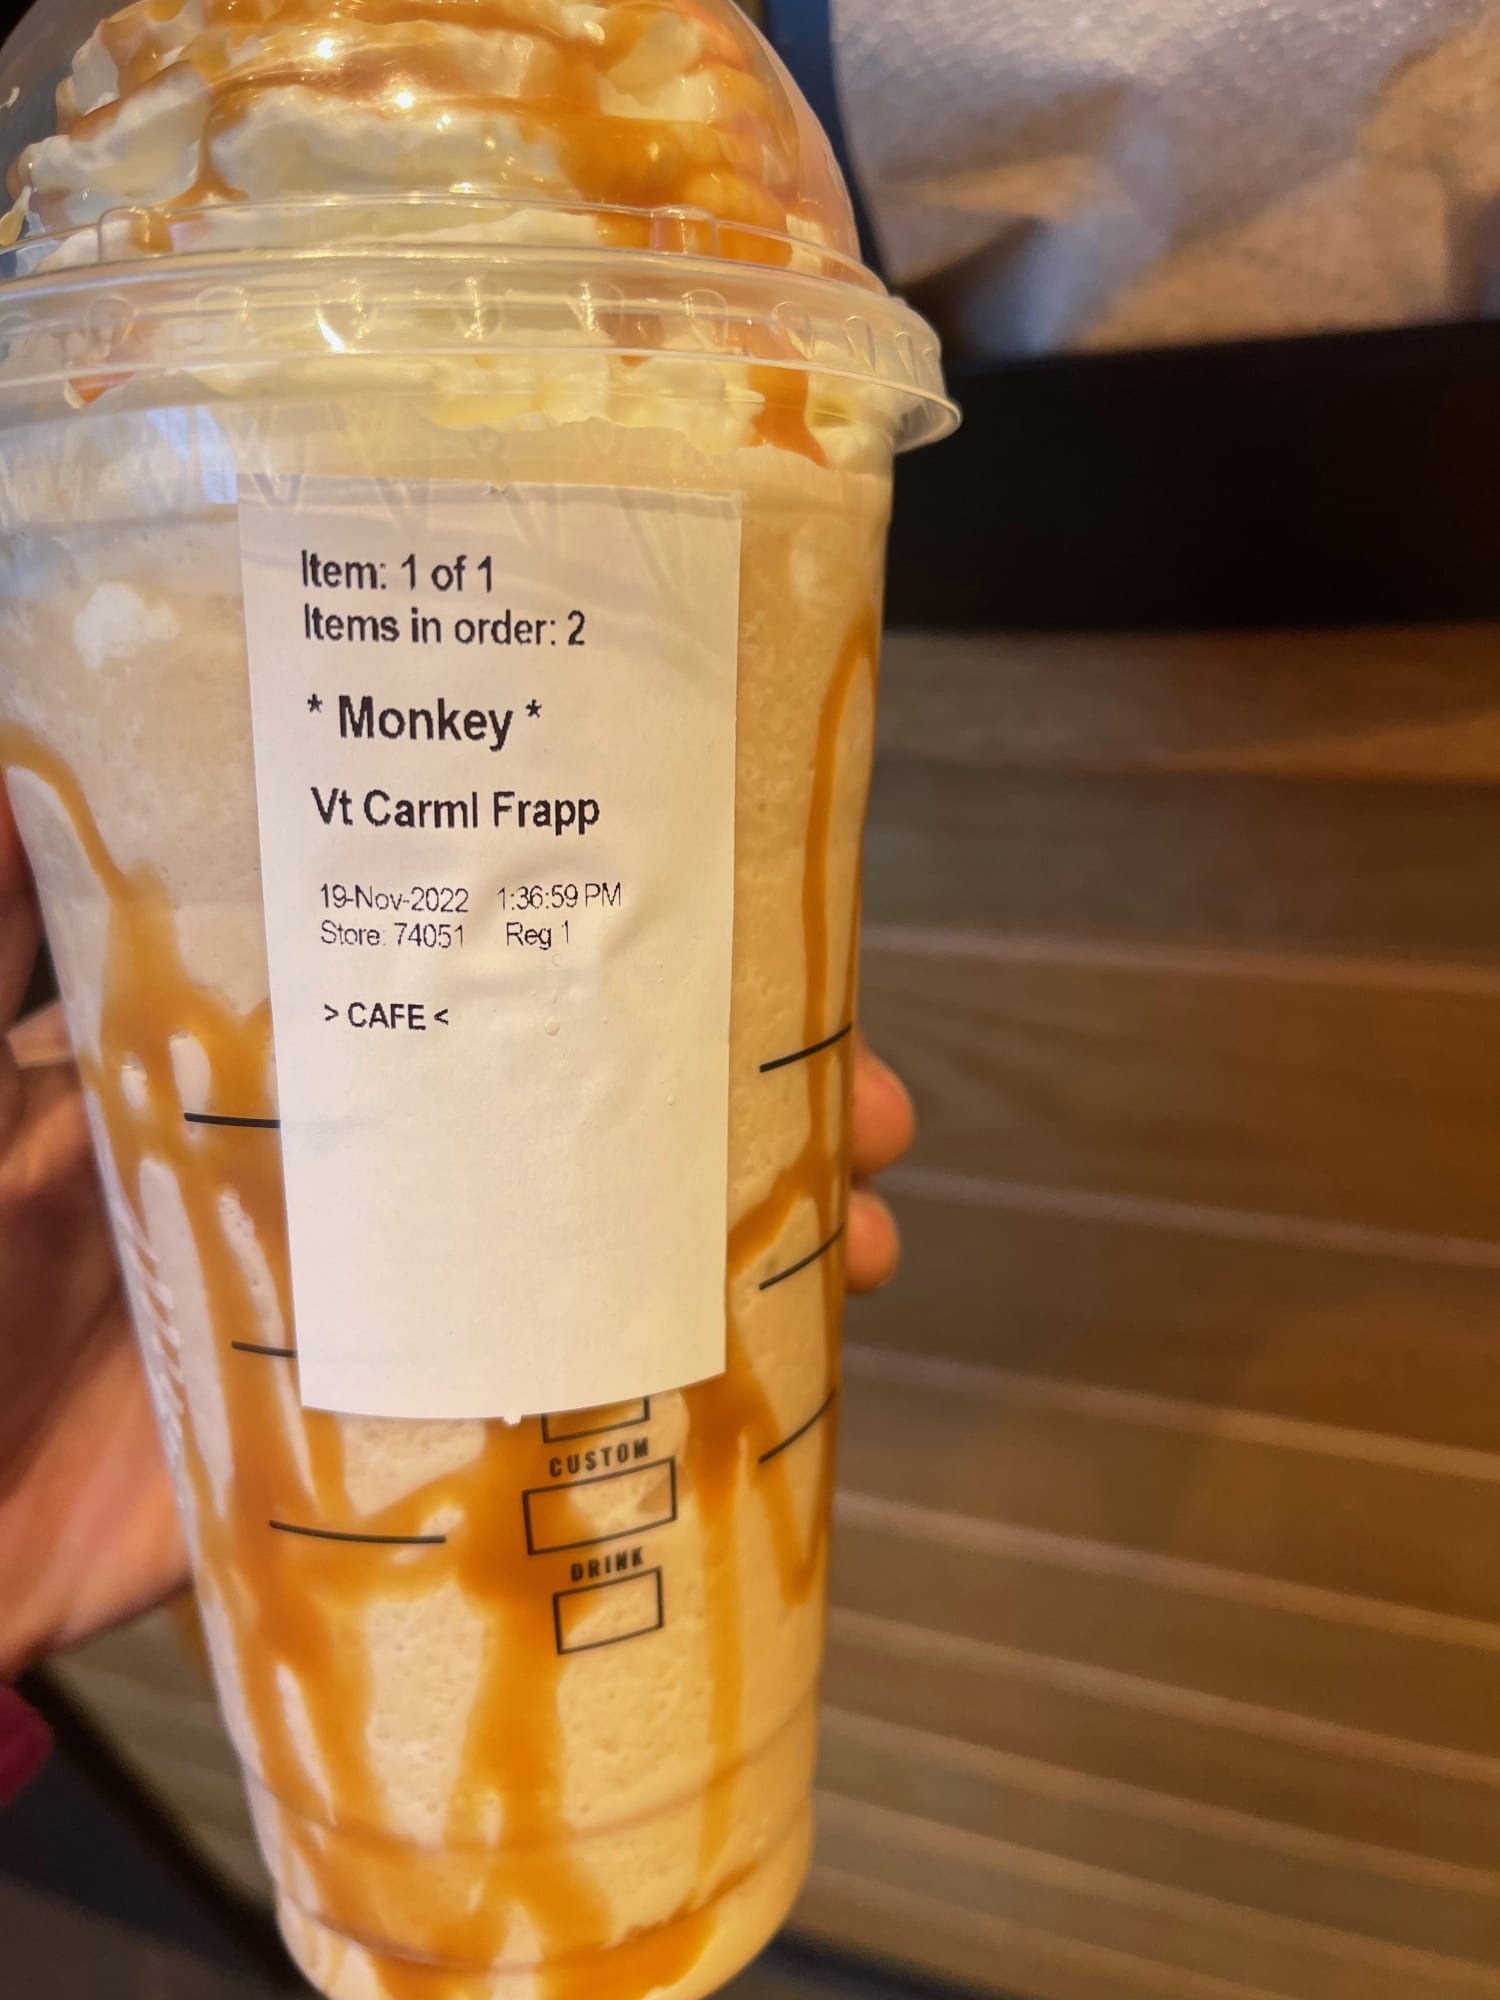 Your Name on a Custom Starbucks Coffee Mug